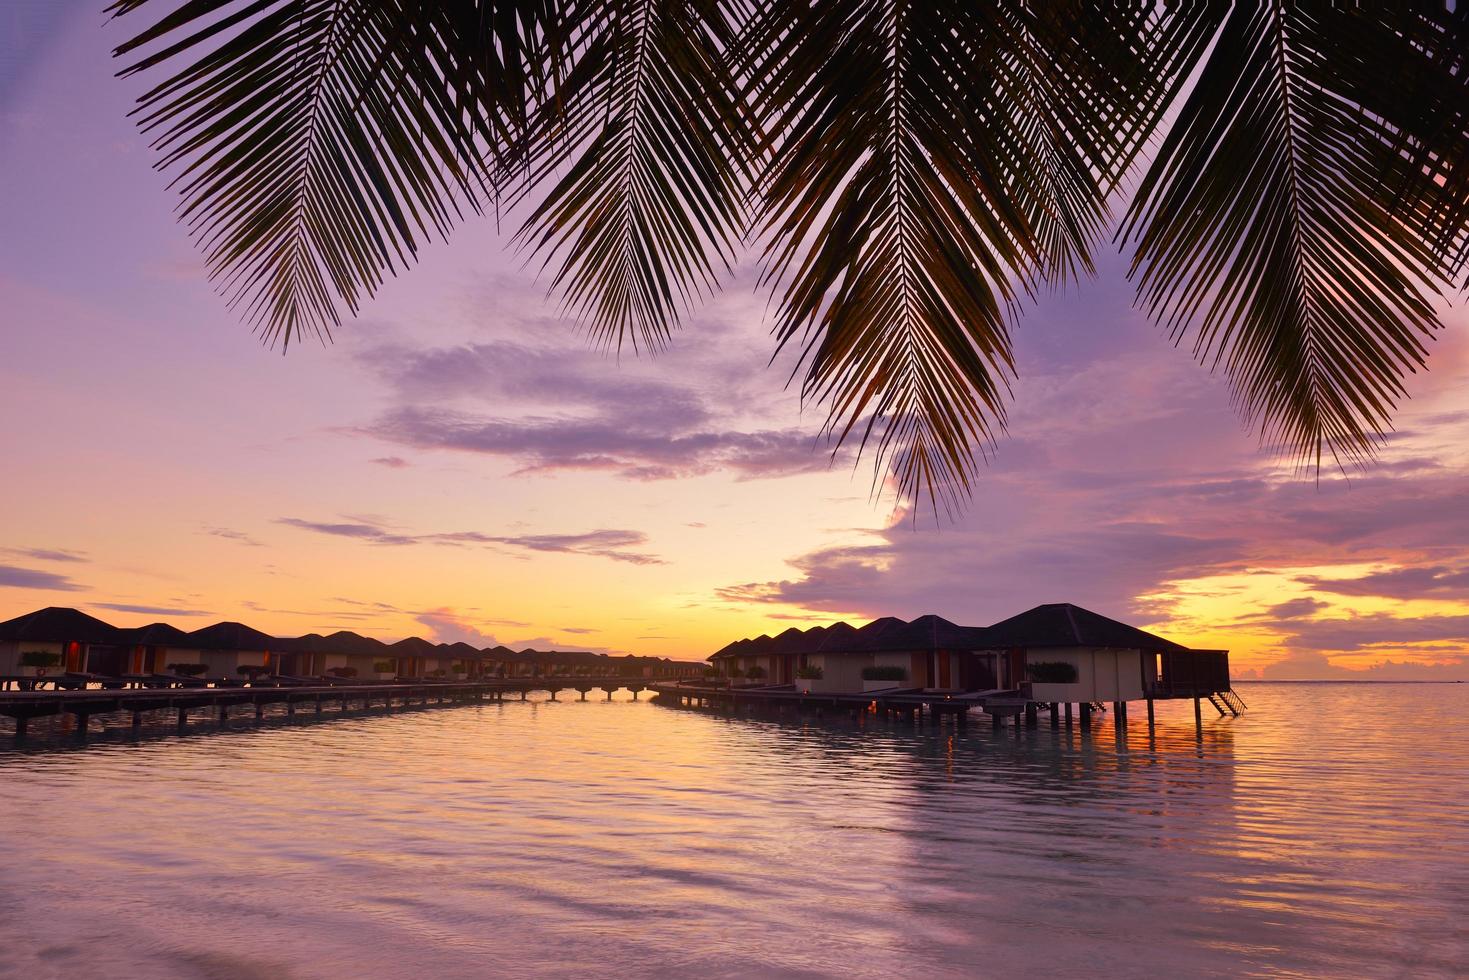 coucher de soleil sur la plage tropicale photo